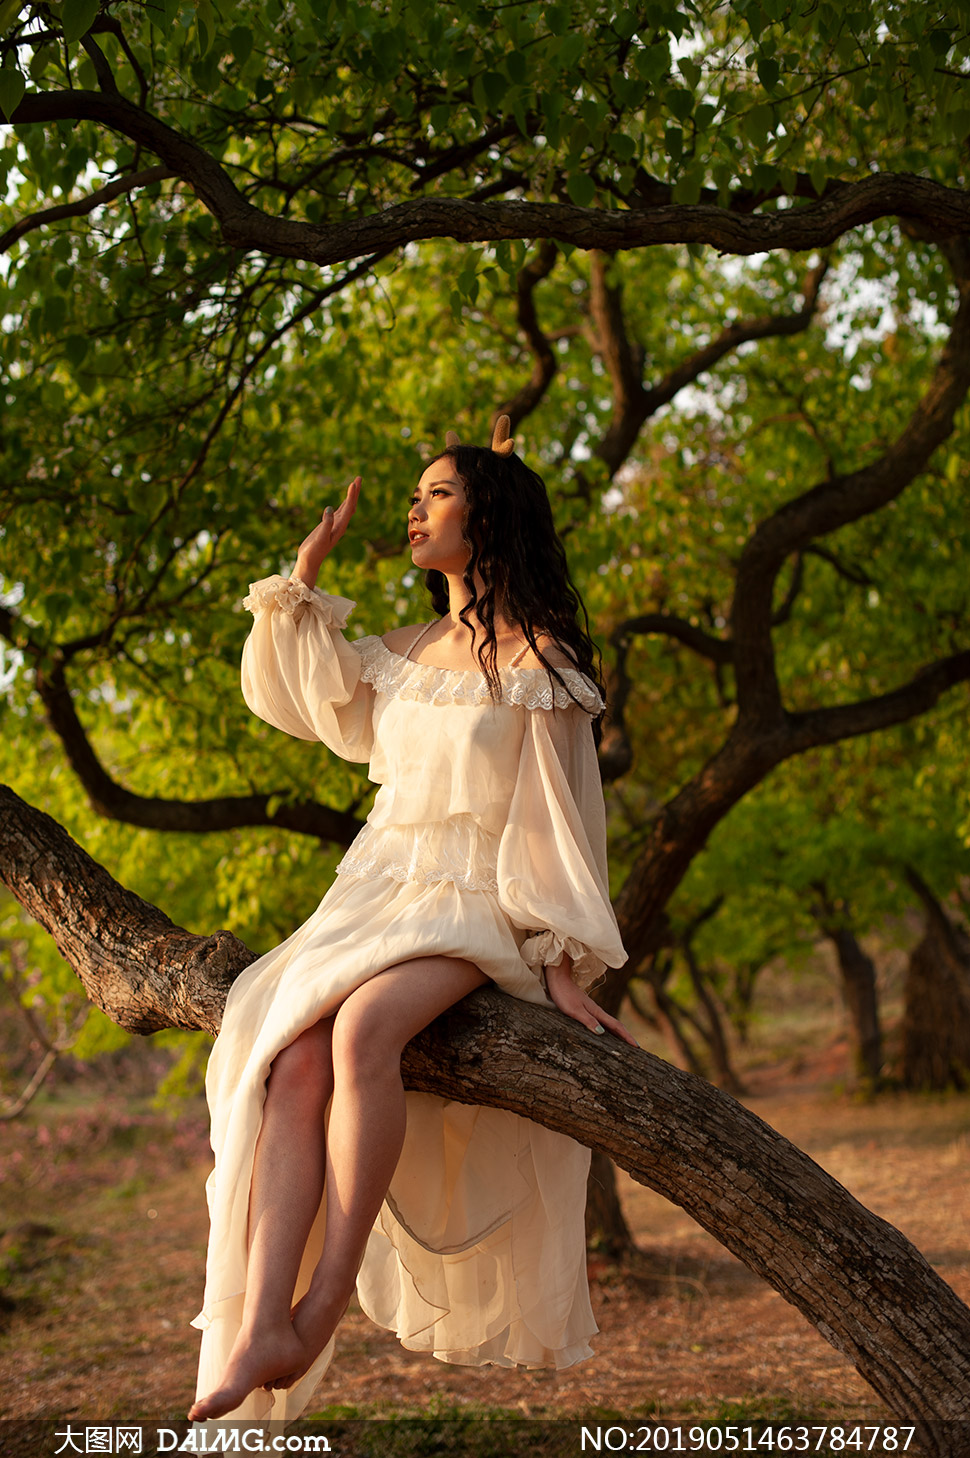 坐在树上的长裙子美女摄影原片素材